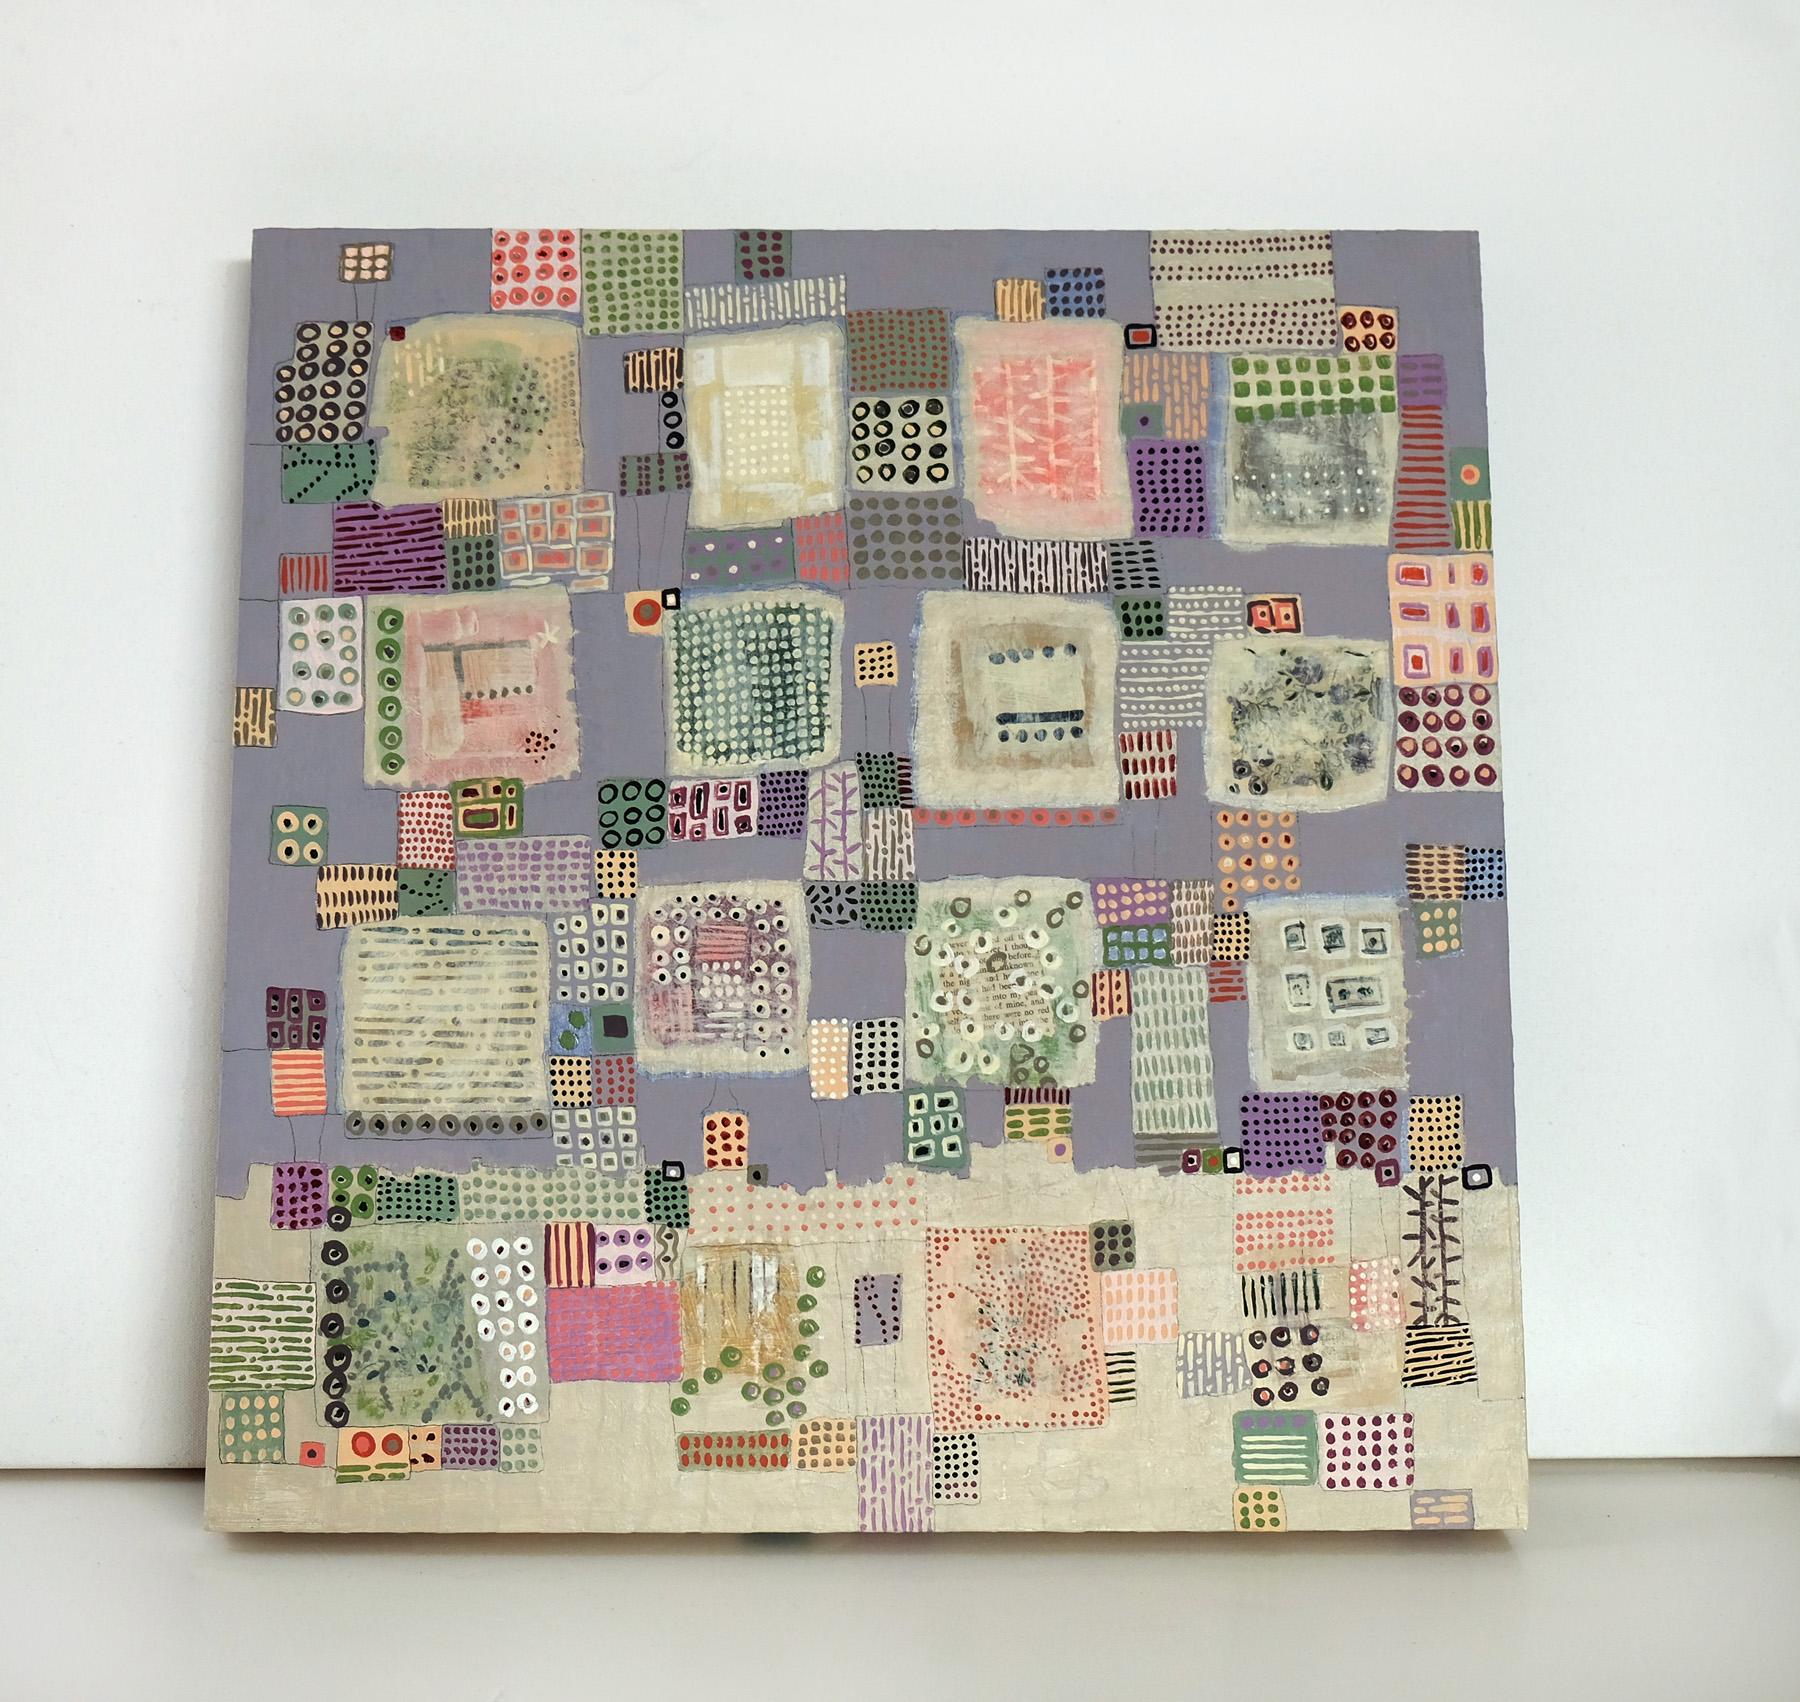 <p>Commentaires de l'artiste<br>Abstrait géométrique librement construit par l'artiste Terri Bell. Des arrangements flottants de cercles, de points et de motifs divers apparaissent dans des carrés, disposés sur un fond pastel atténué avec des tons